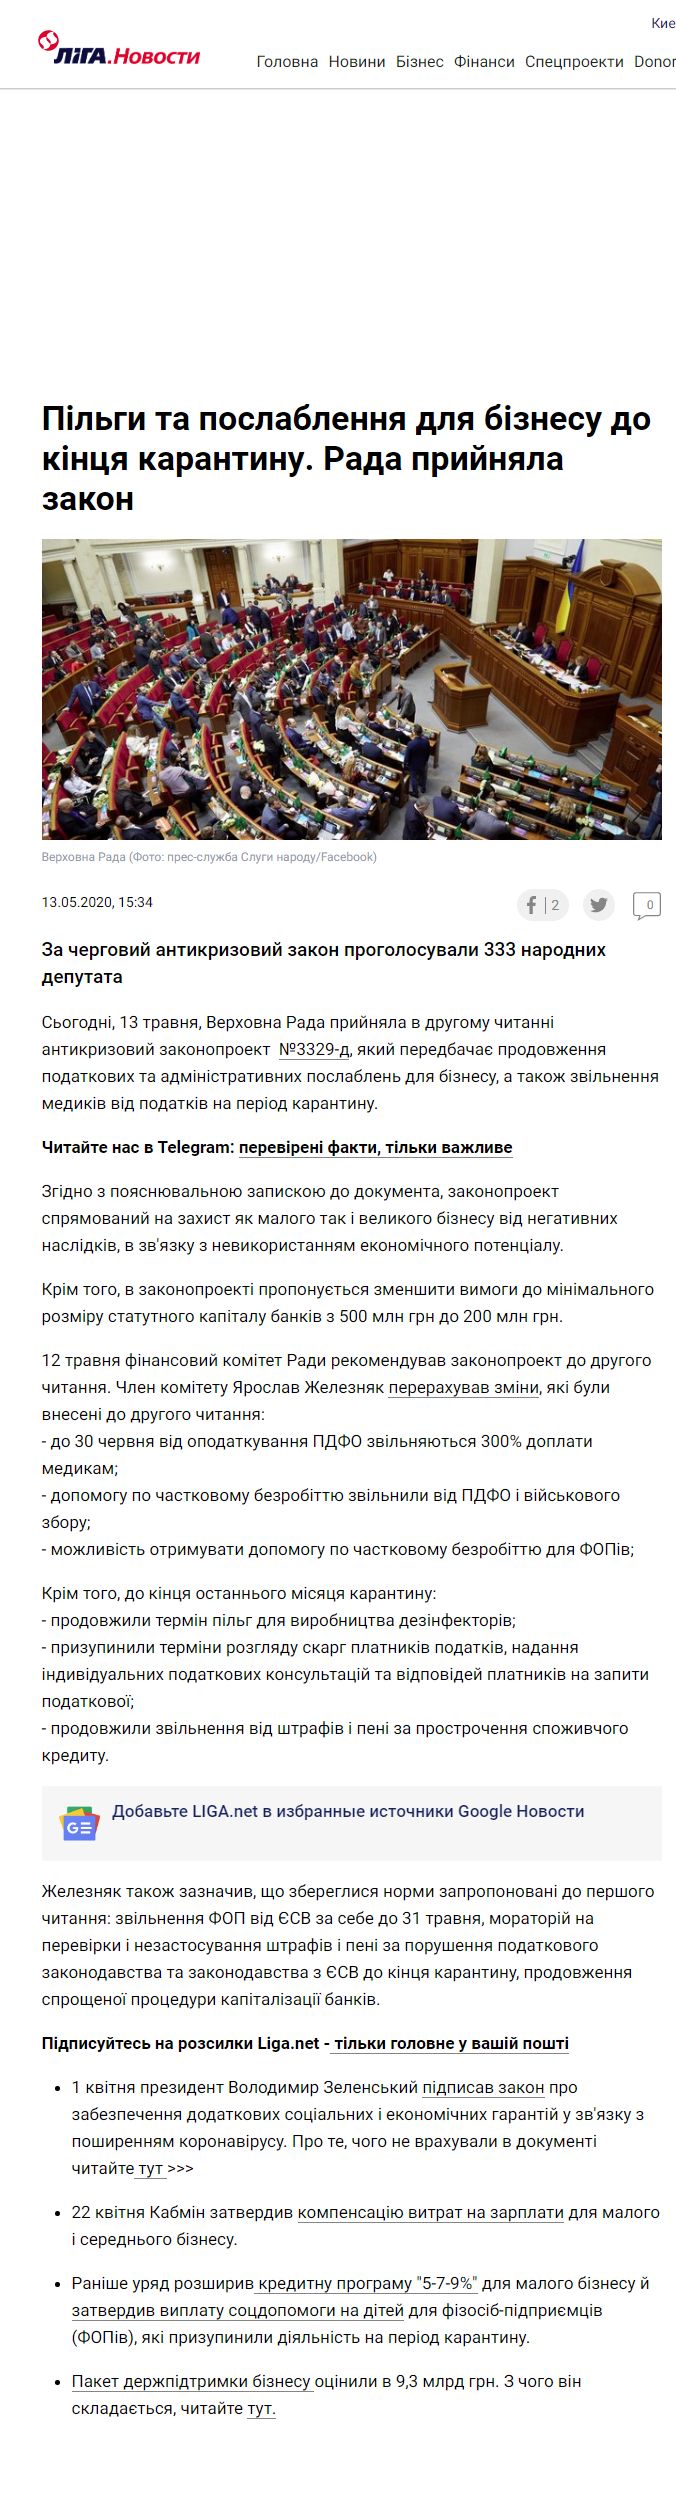 https://ua-news.liga.net/economics/news/pilgi-ta-poslablennya-dlya-biznesu-do-kintsya-karantinu-rada-priynyala-zakon